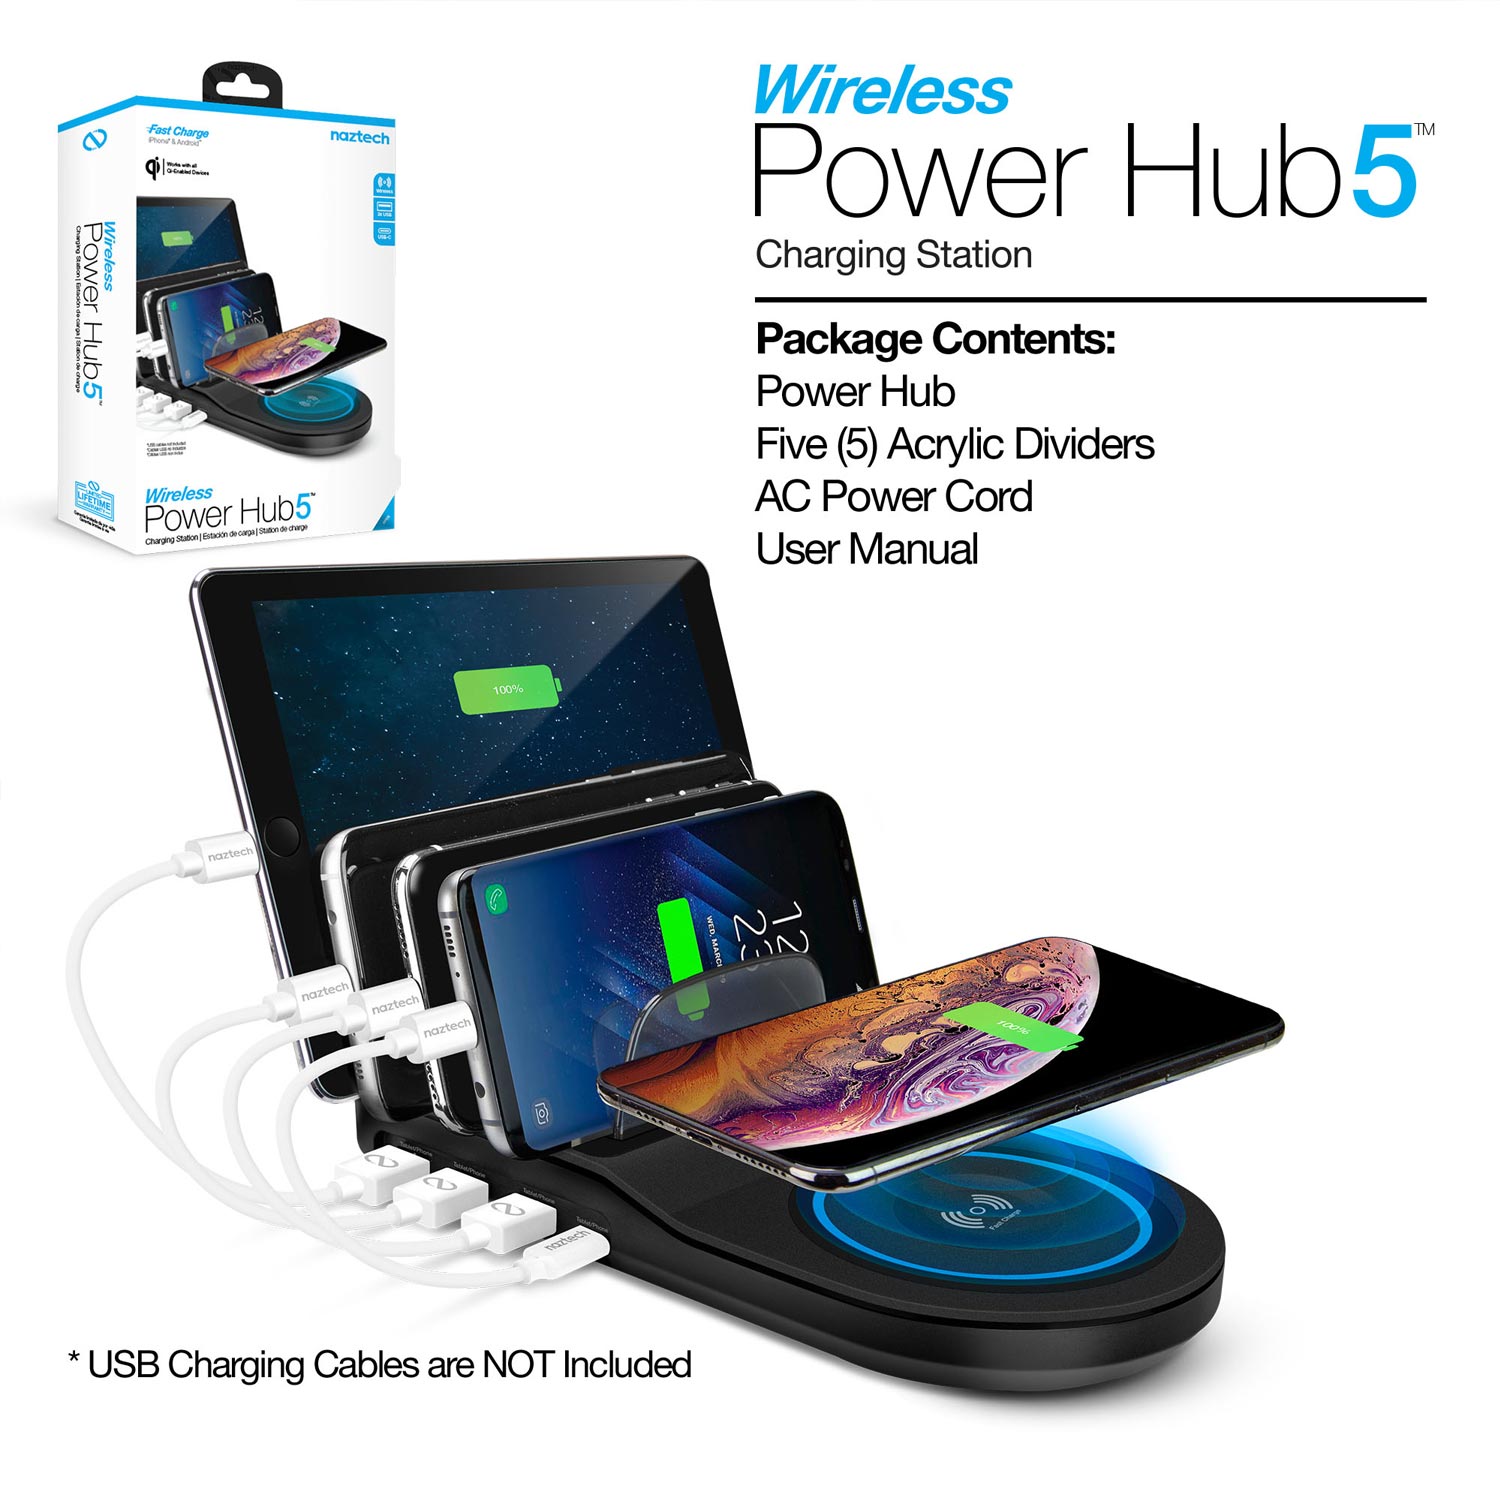 Wireless Power Hub 5